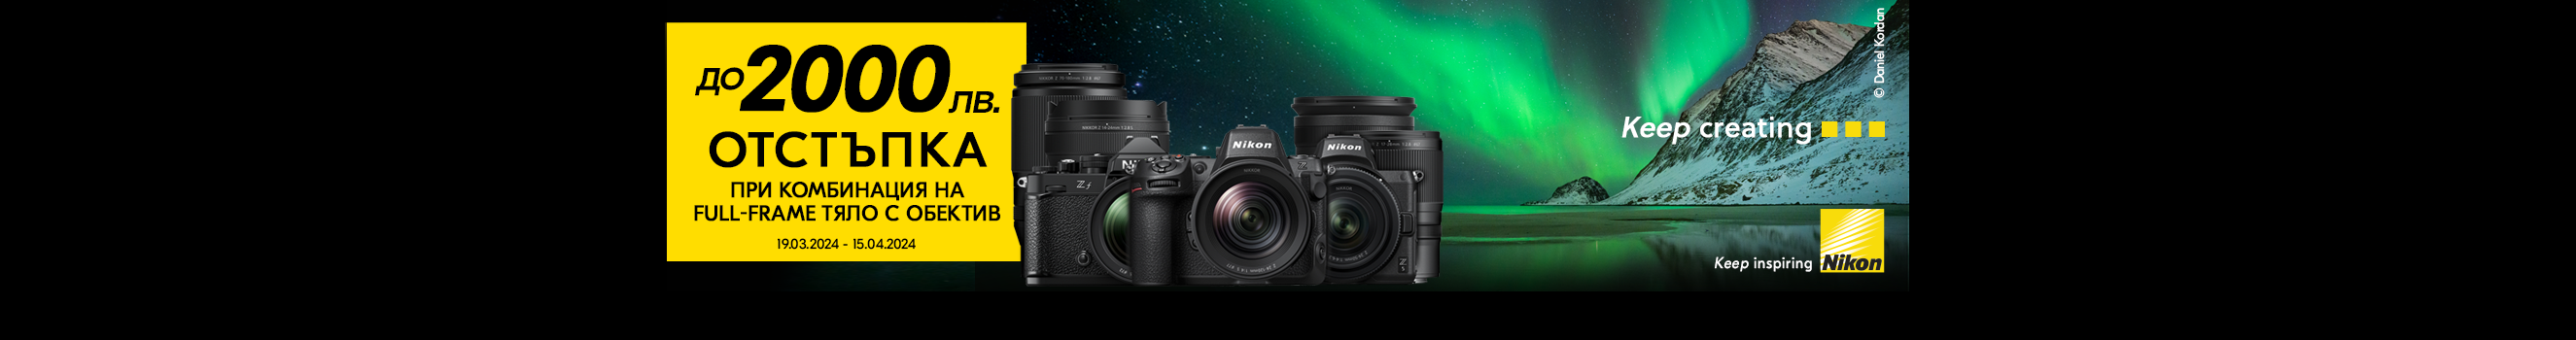 Вземете избрани фулфрейм фотоапарати Nikon Z самостоятелно или в комплект в комбинация с избрани обективи с до 2000 лв. отстъпка от цената на обектива до 15.04 